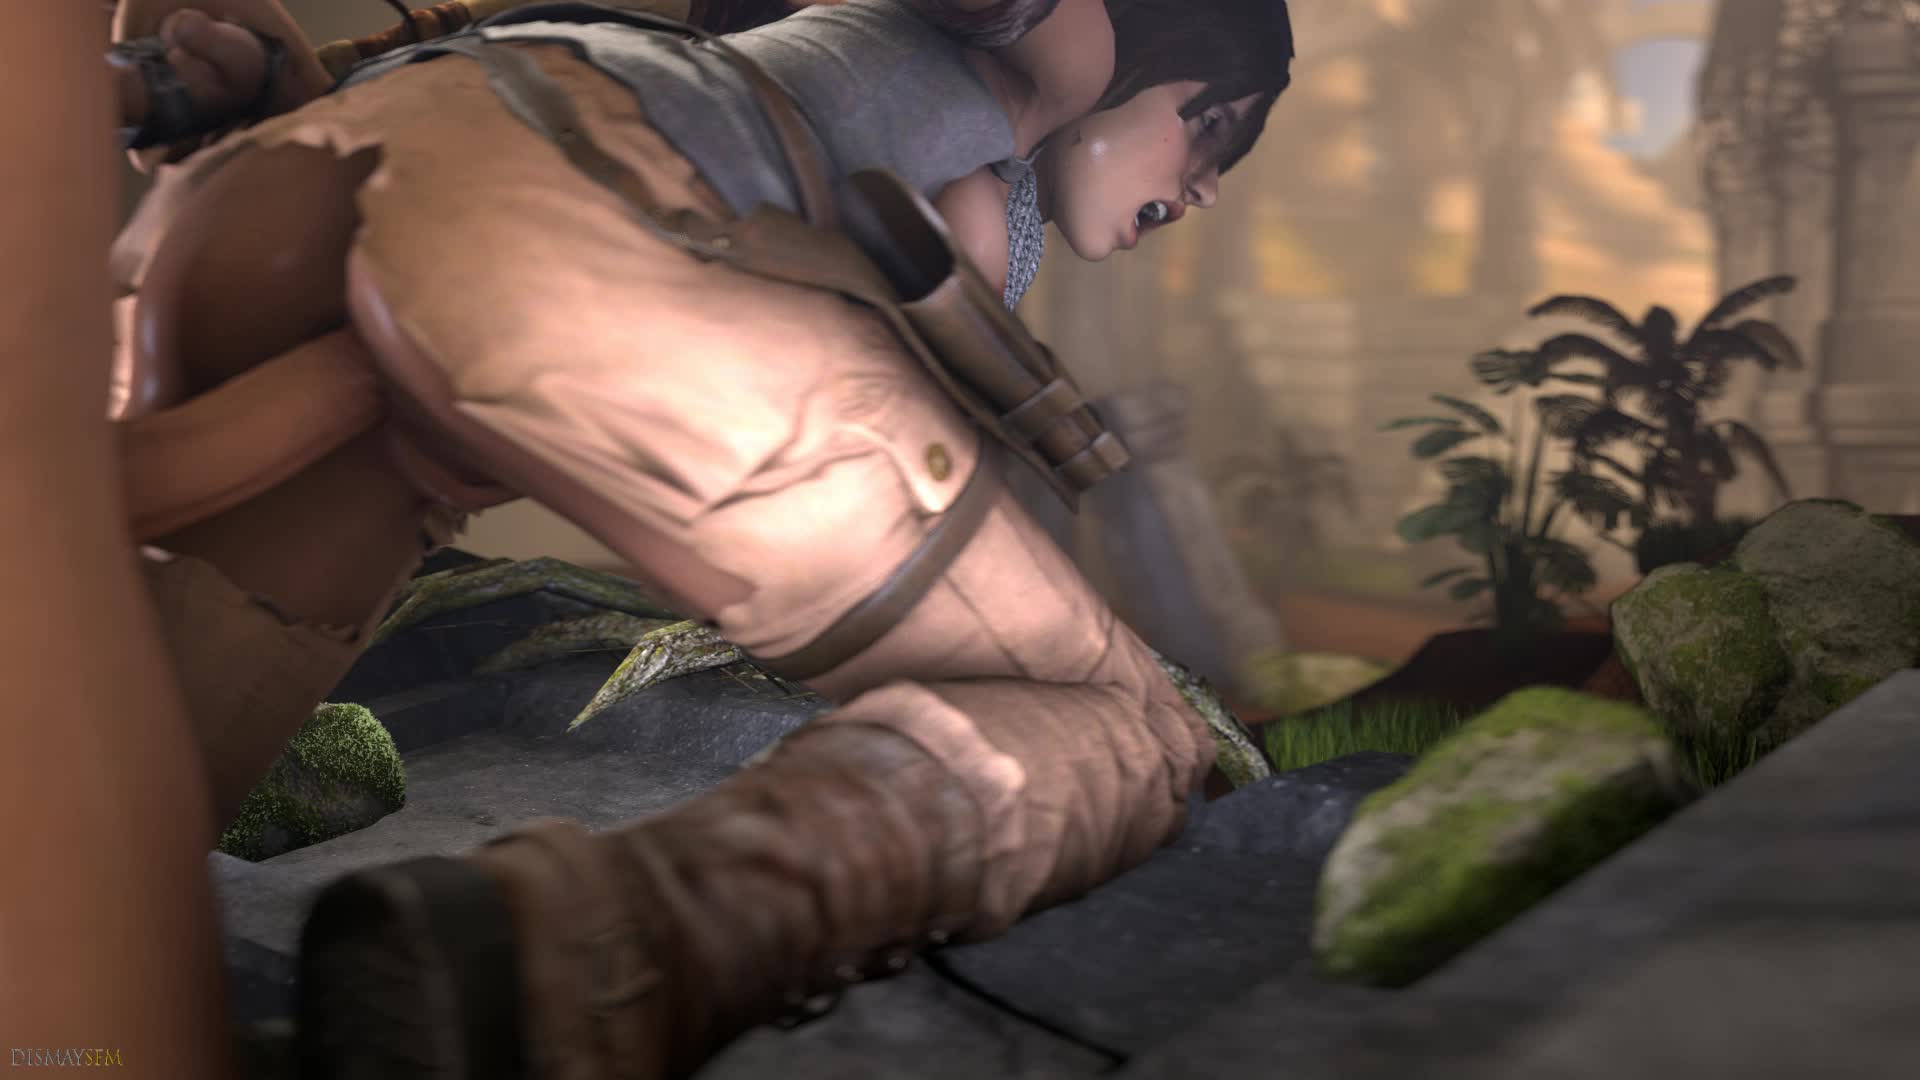 3D Animated Lara_Croft Source_Filmmaker Tomb_Raider dismaysfm // 1920x1080 // 5.8MB // webm